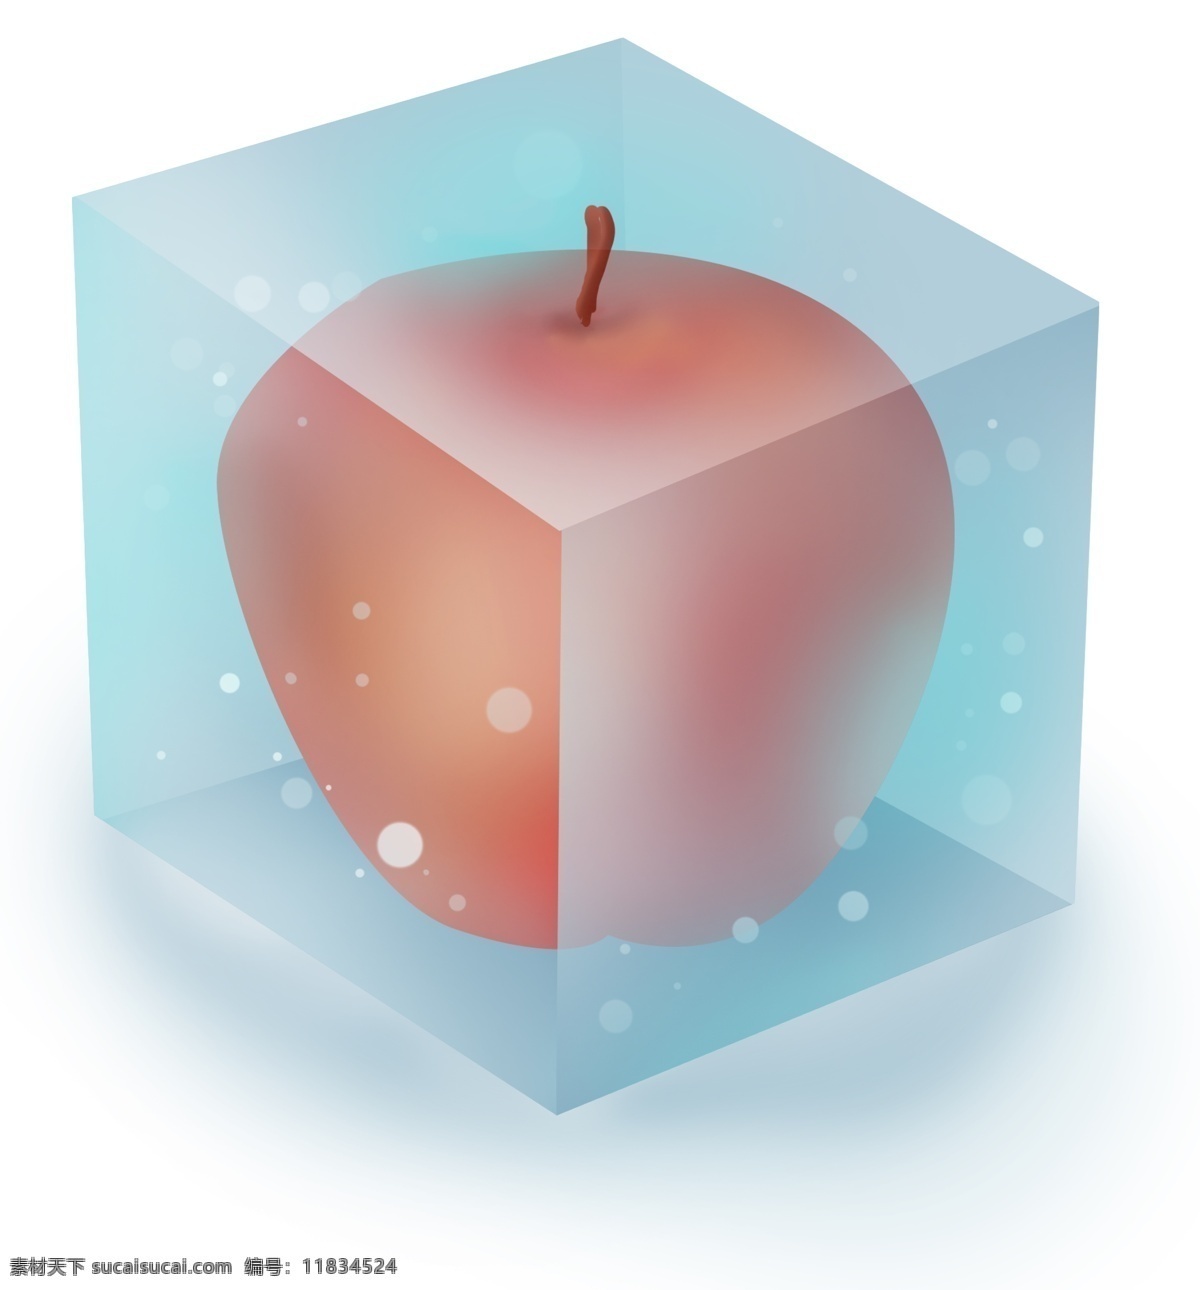 夏季 冰块 里 苹果 夏季解暑 小暑 大暑 入夏 水果 冰 解暑